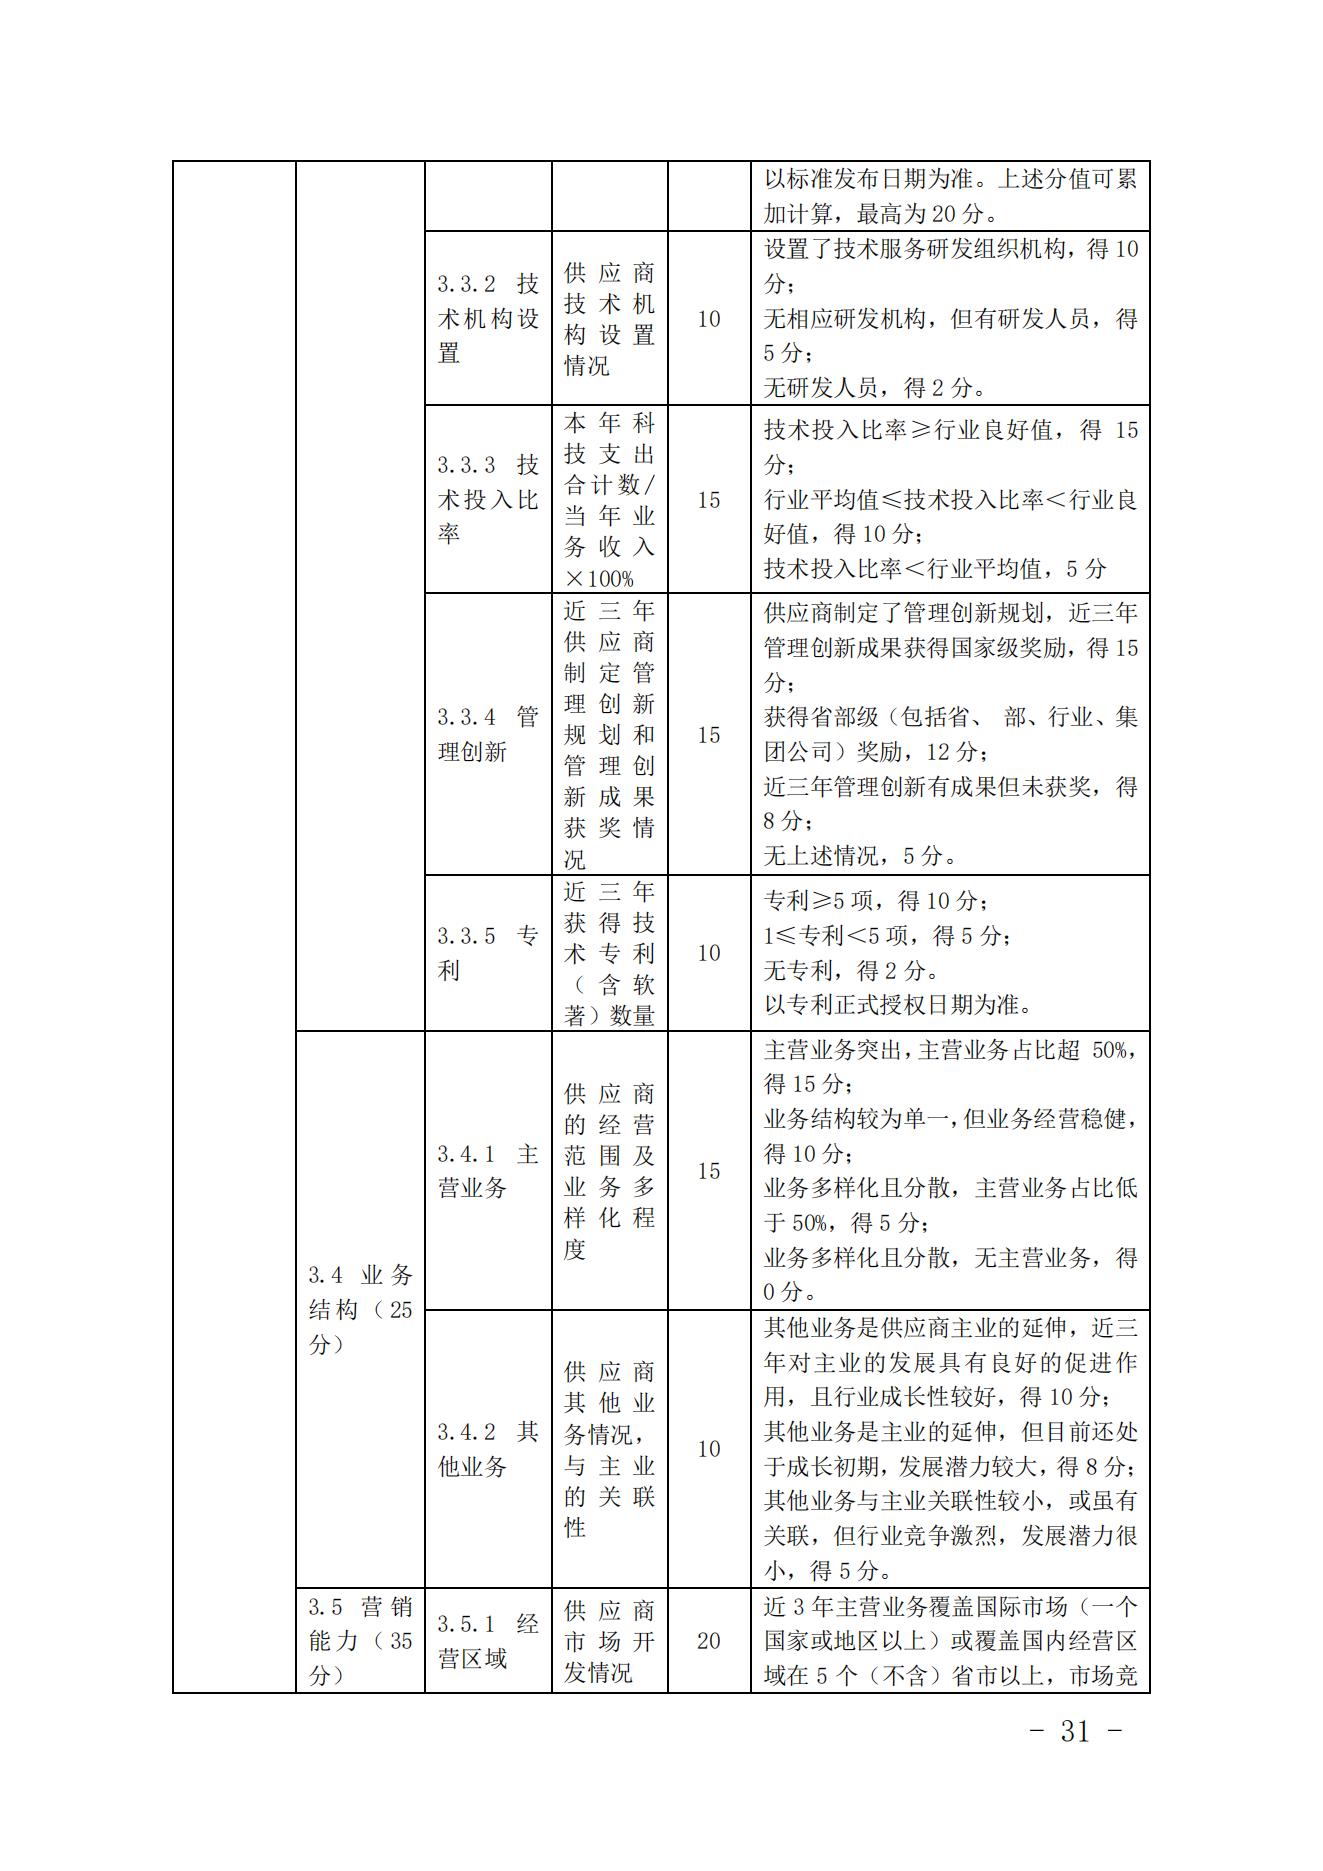 关于印发《中国核能行业协会核能行业供应商信用评价管理办法》《中国核能行业协会核能行业供应商信用评价规范》的通知_30.jpg